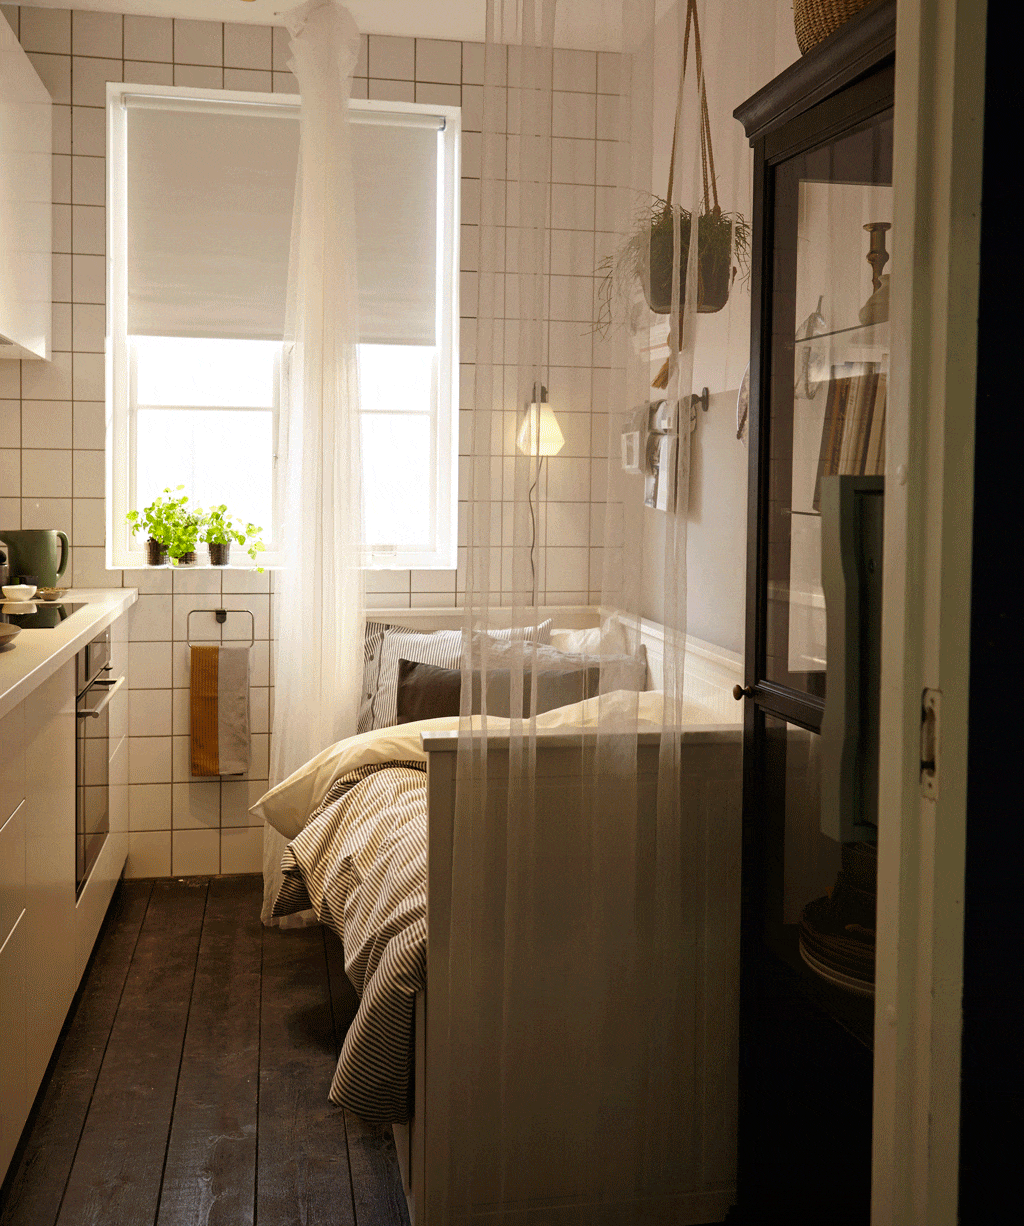 Спальное место на кухне (37 фото): как сделать дизайн с кроватью на маленькой кухне? как выделить и организовать зону для мягкой мебели?